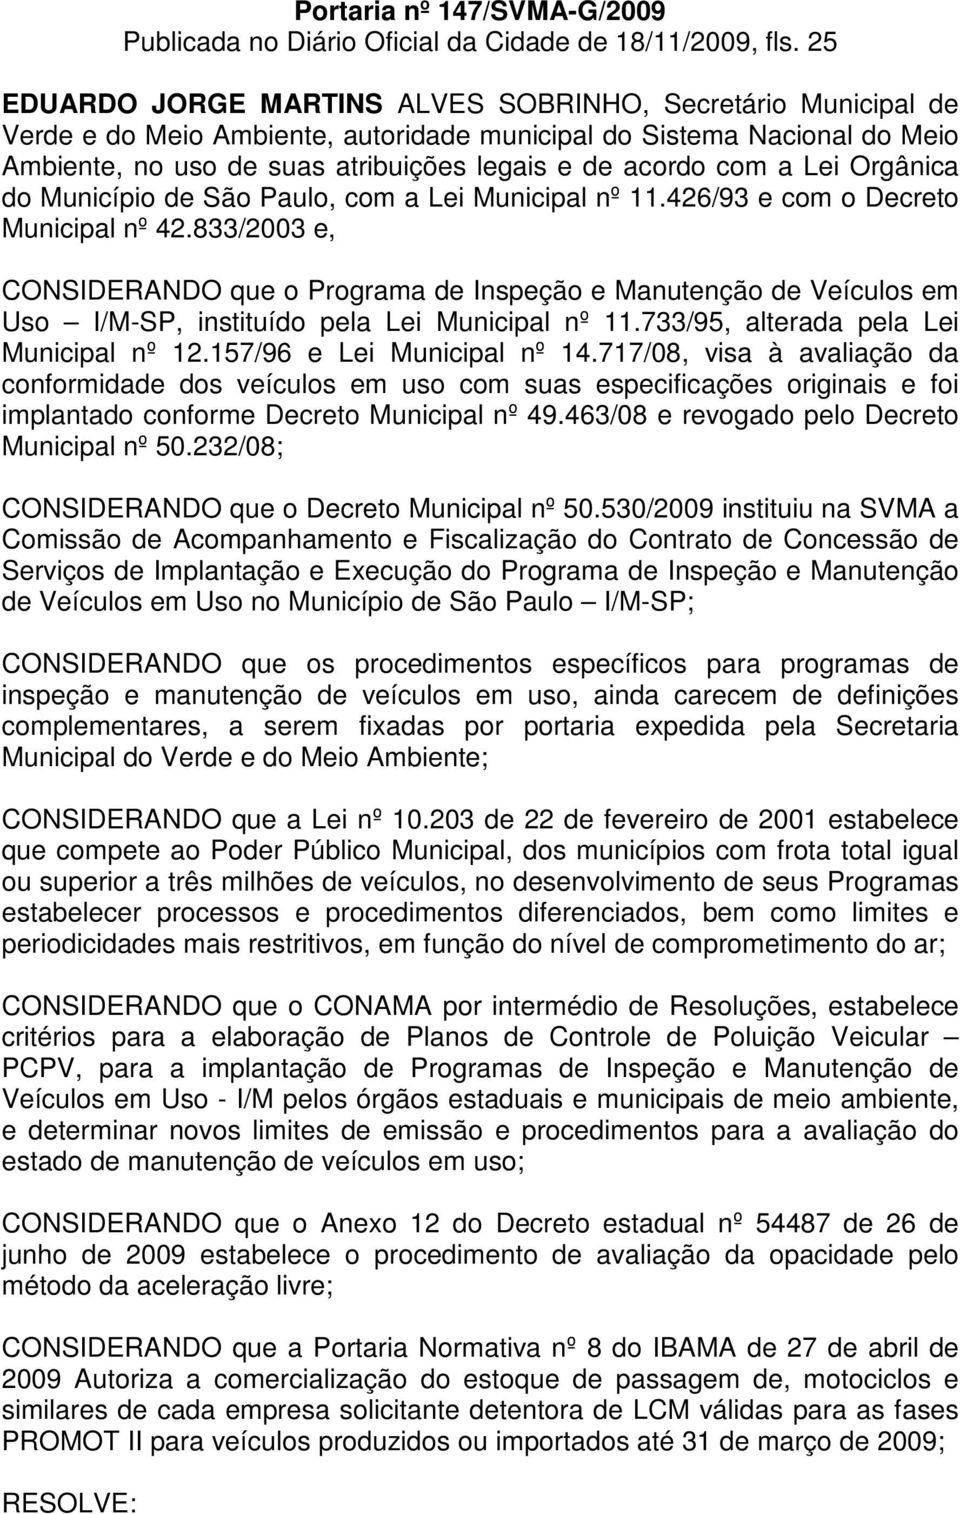 a Lei Orgânica do Município de São Paulo, com a Lei Municipal nº 11.426/93 e com o Decreto Municipal nº 42.